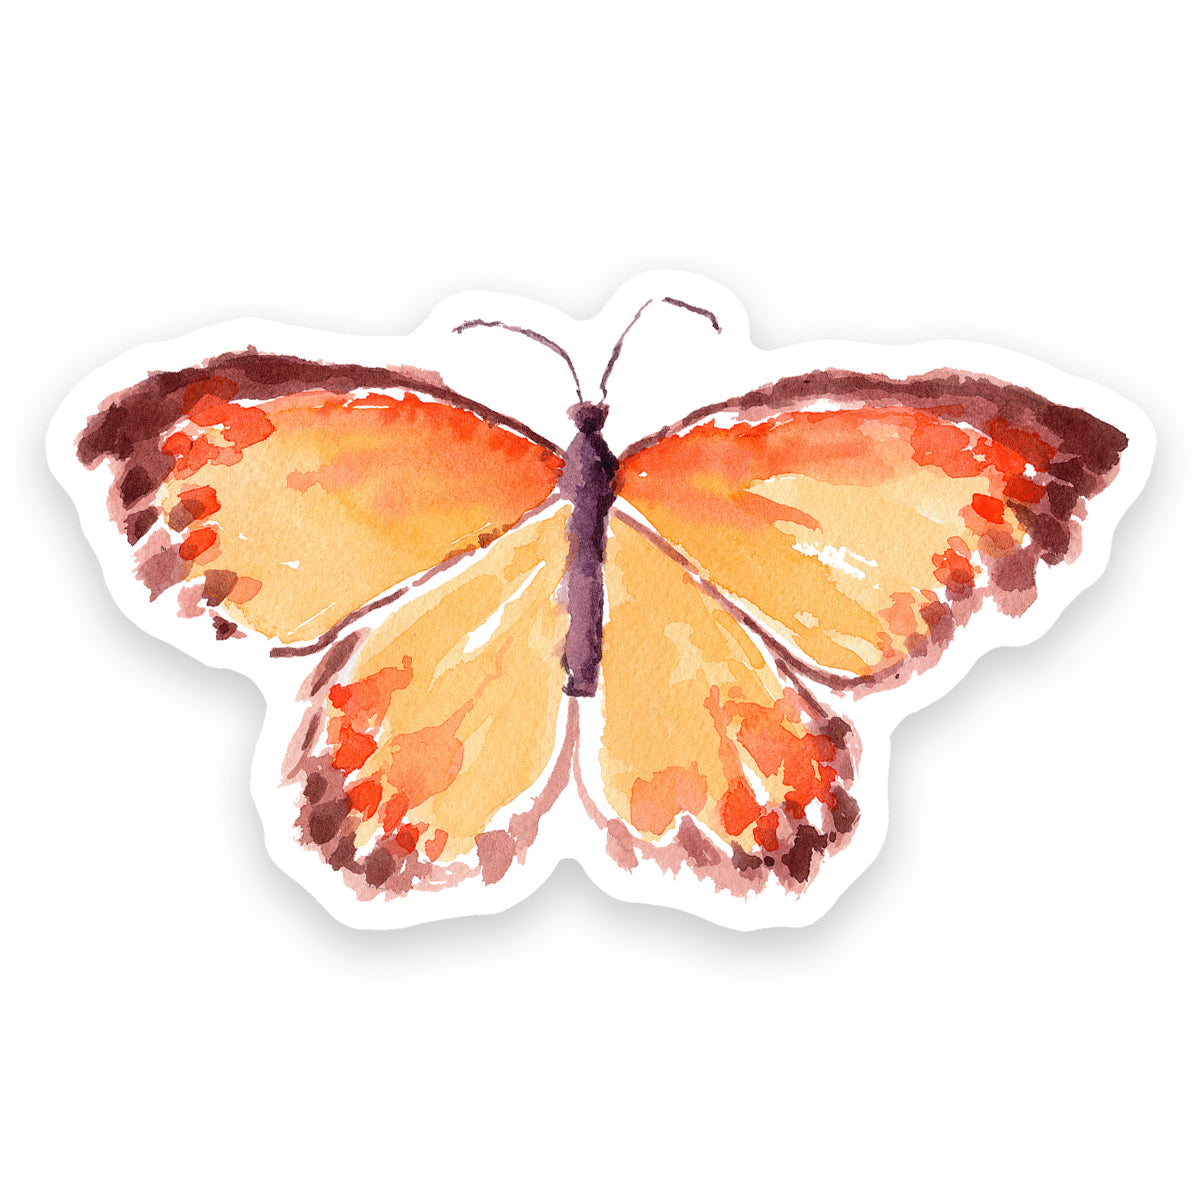 Monarch Butterfly Transfer Sticker